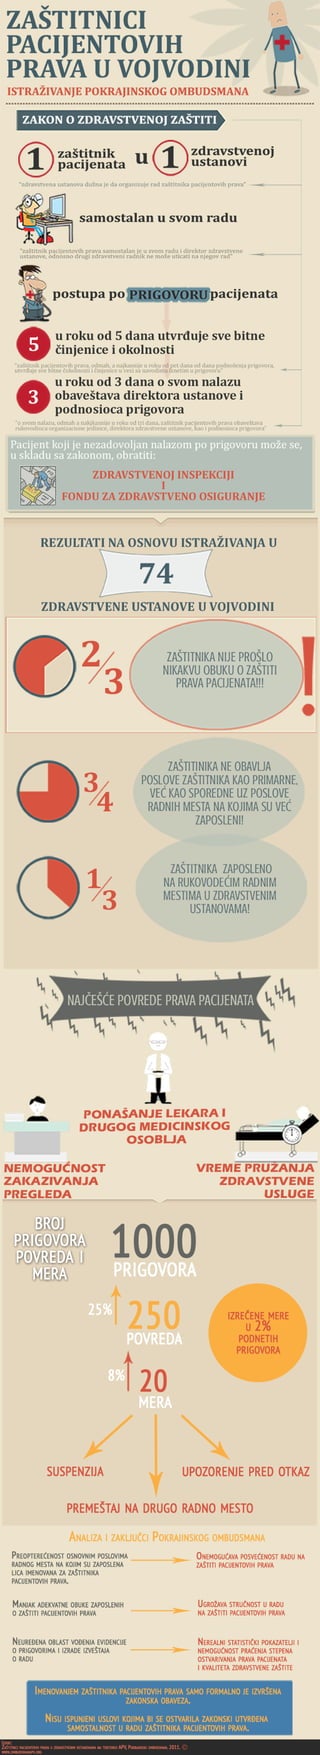 Infografik - Zaštitnik pacijentovih prava